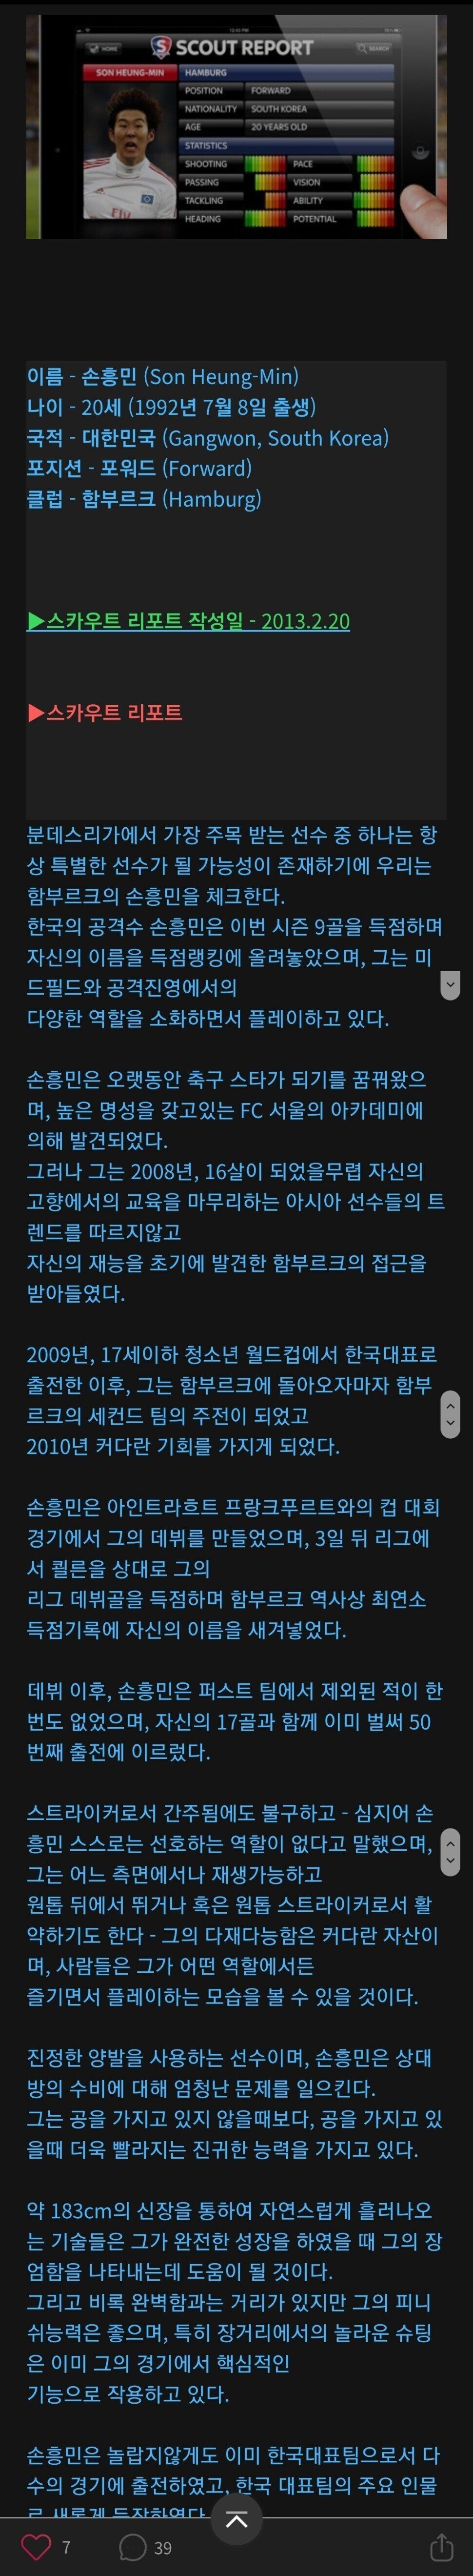 10여년전 손흥민 스카우트 리포트